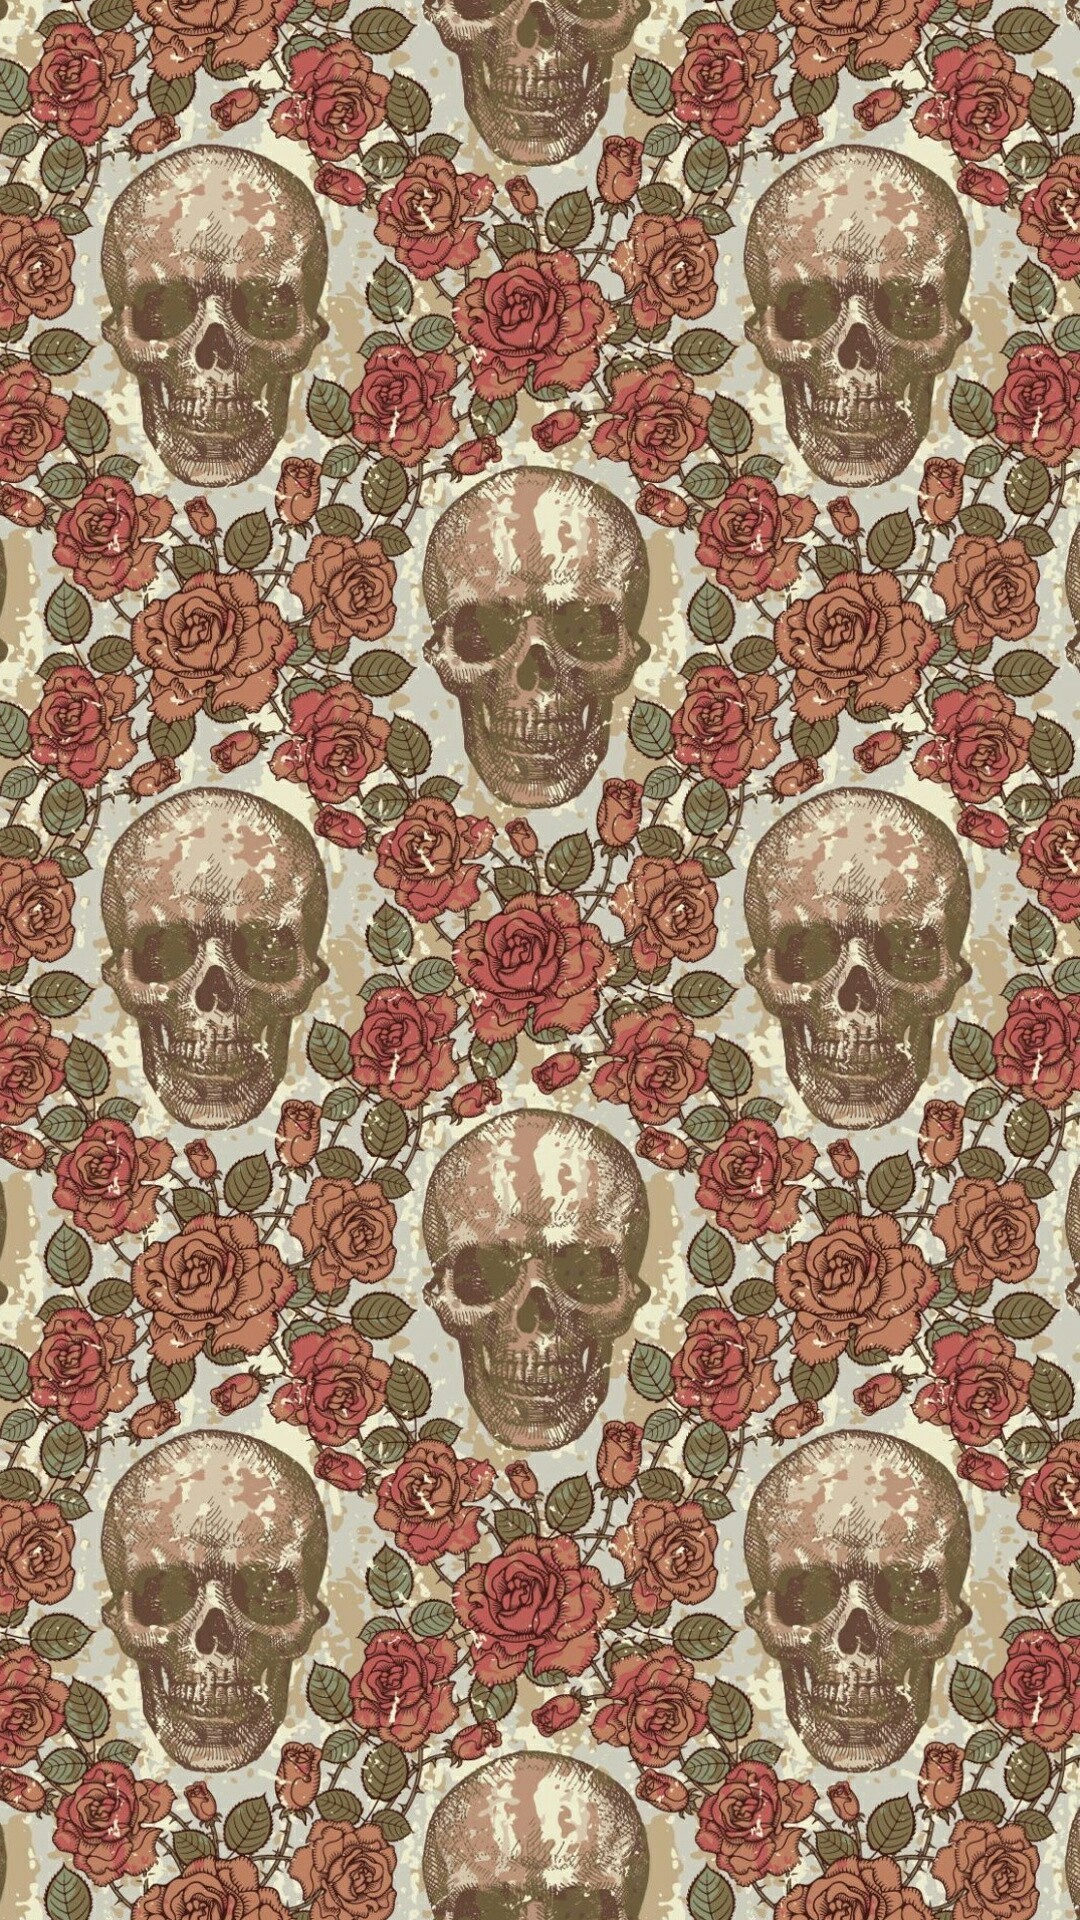 Skulls & Roses On Paper Src Top Cute Skull Wallpaper Pattern Wallpaper iPhone HD Wallpaper